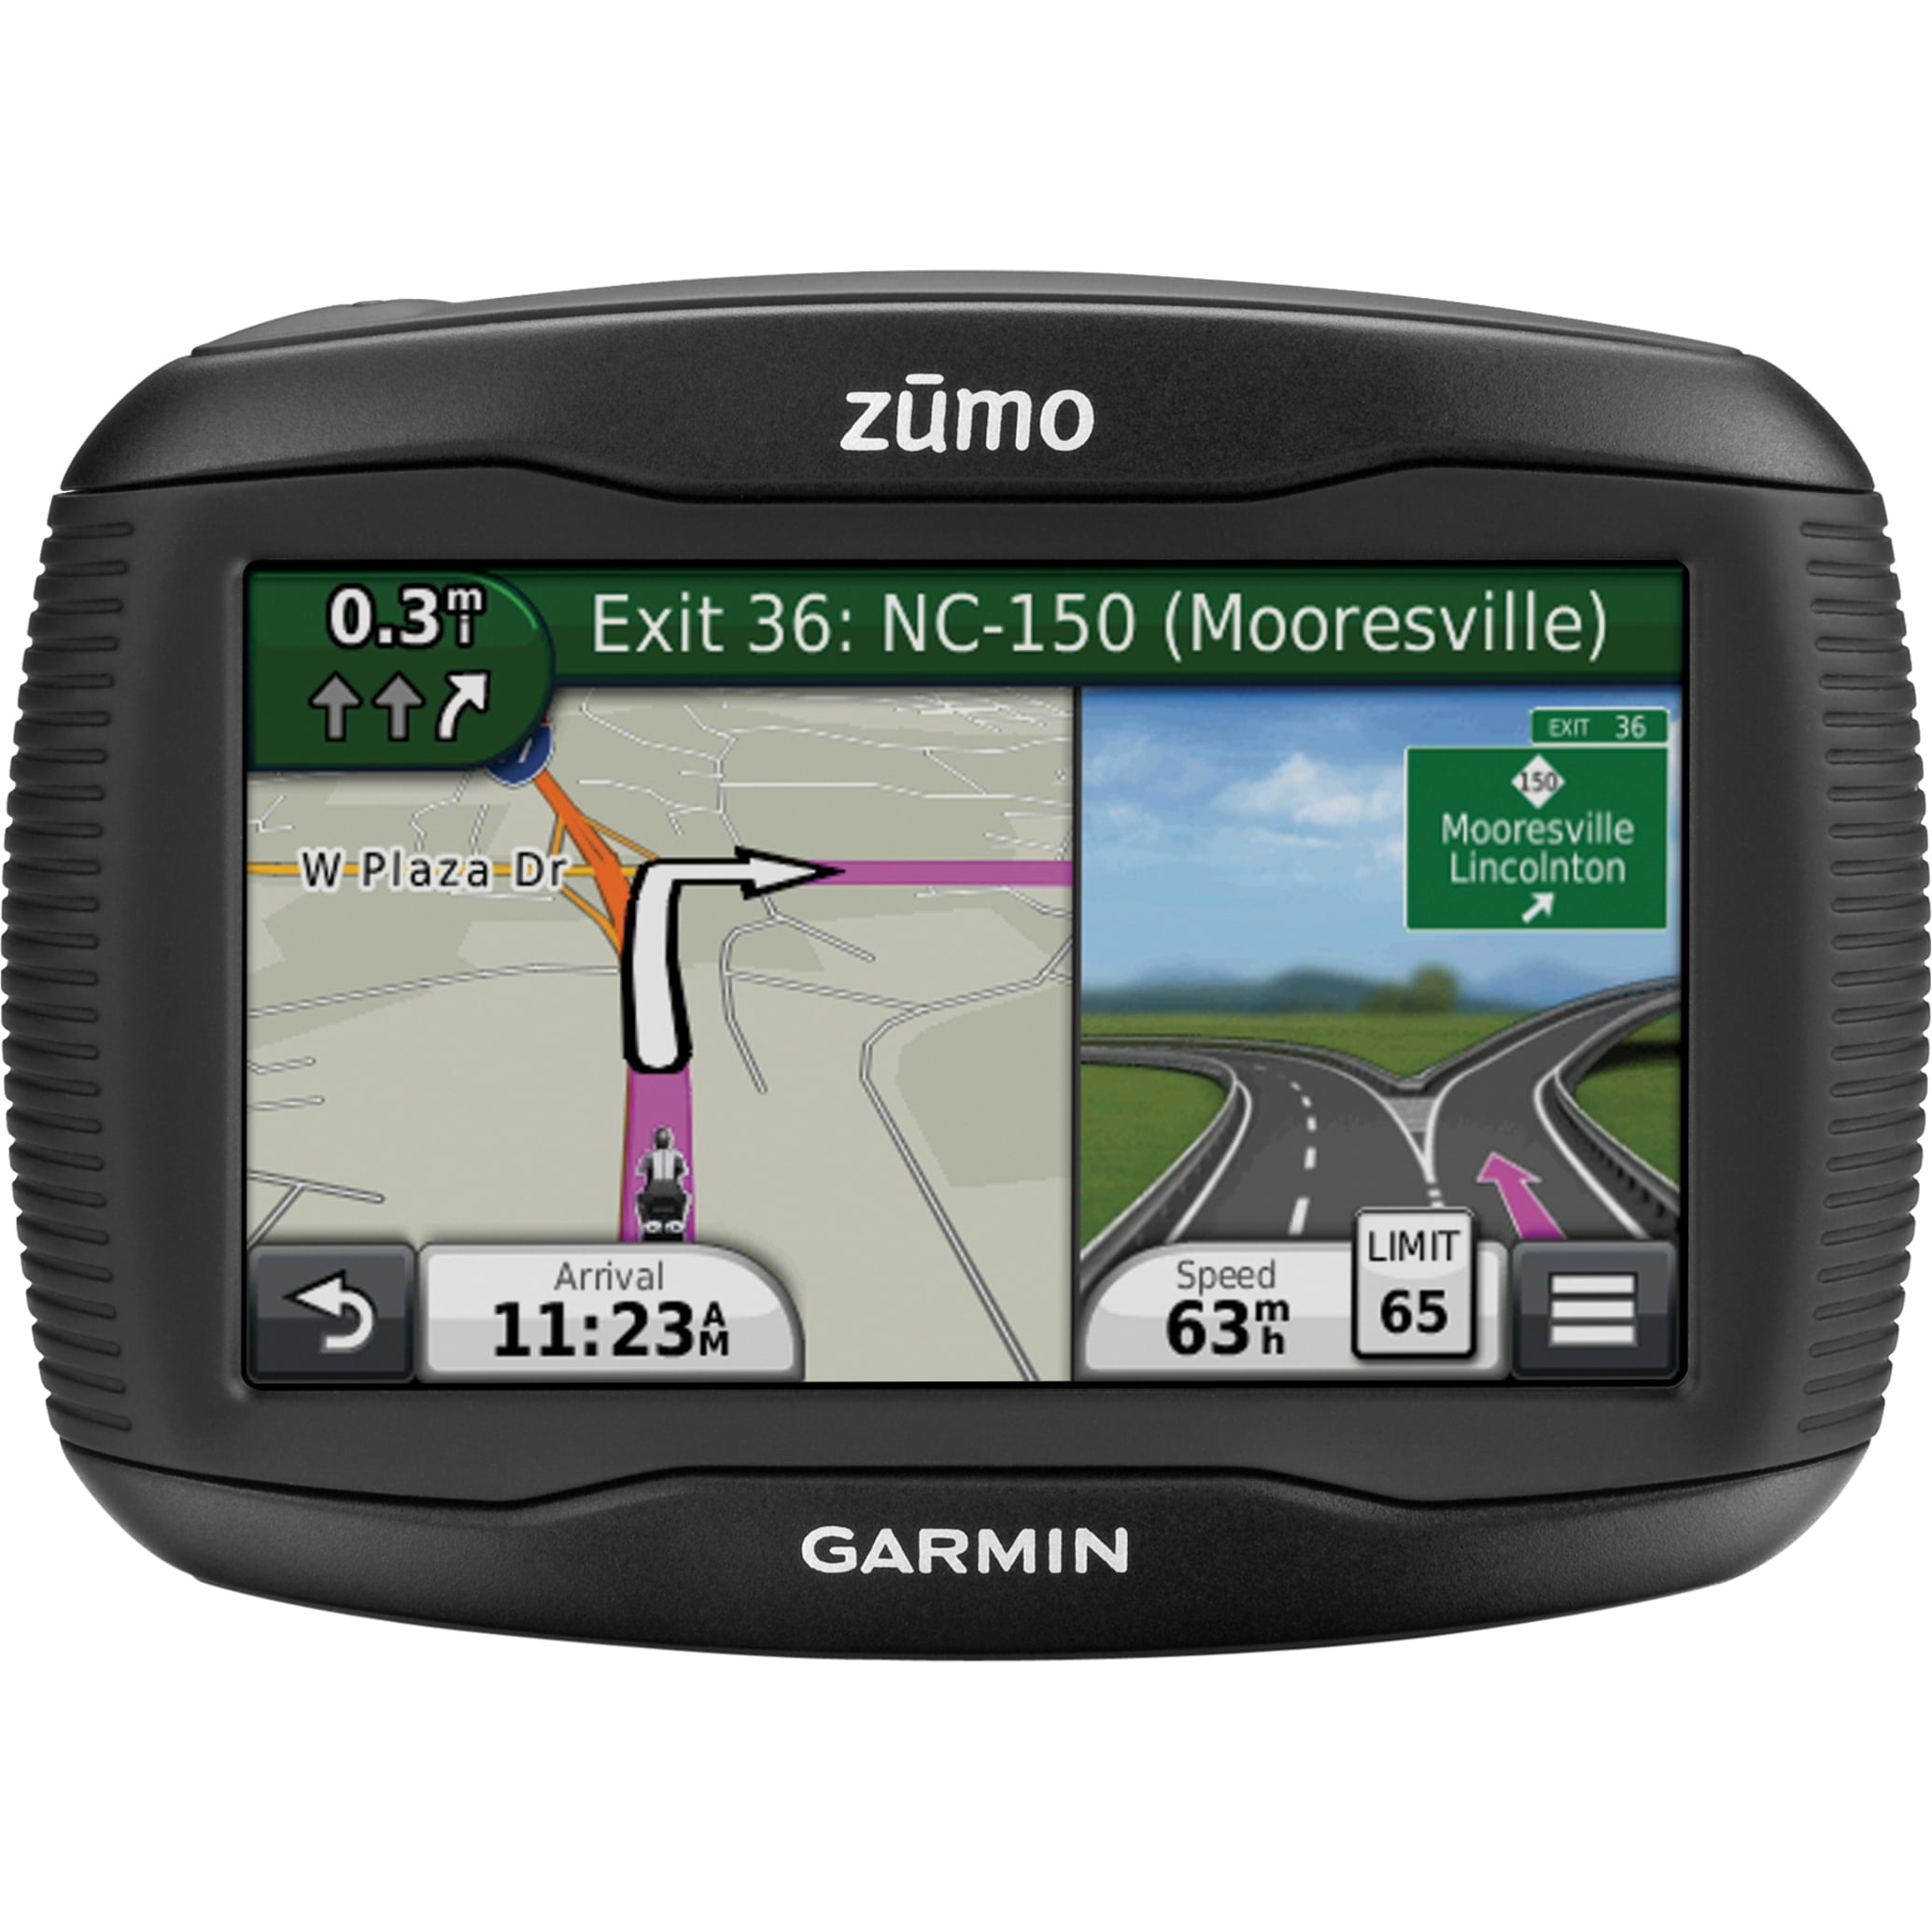 Dekking Ligatie Kroniek Garmin zumo 350LM Motorcycle GPS Navigator - Walmart.com